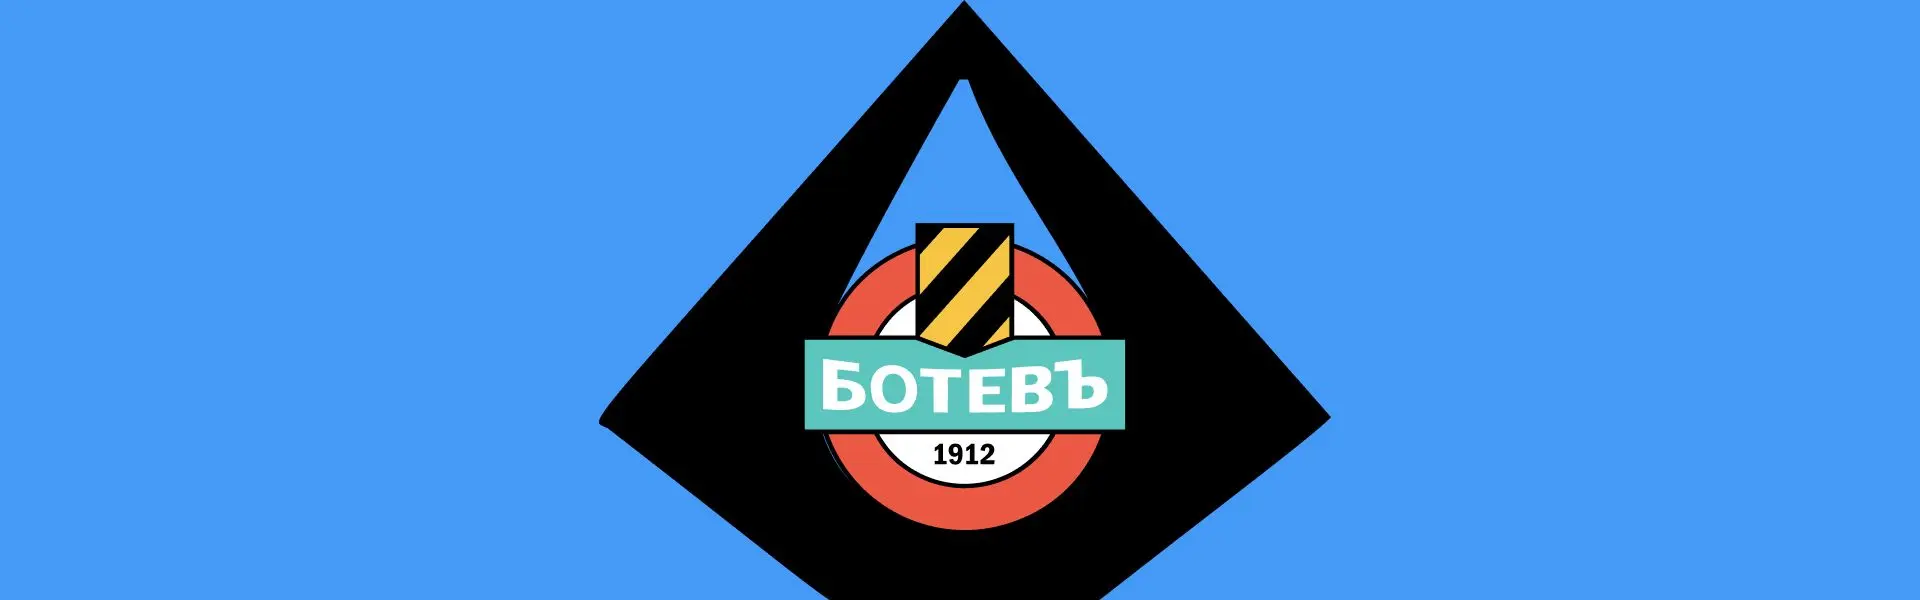 Футбольний клуб "Ботев" почав використовувати пляжну сумку AQUA.